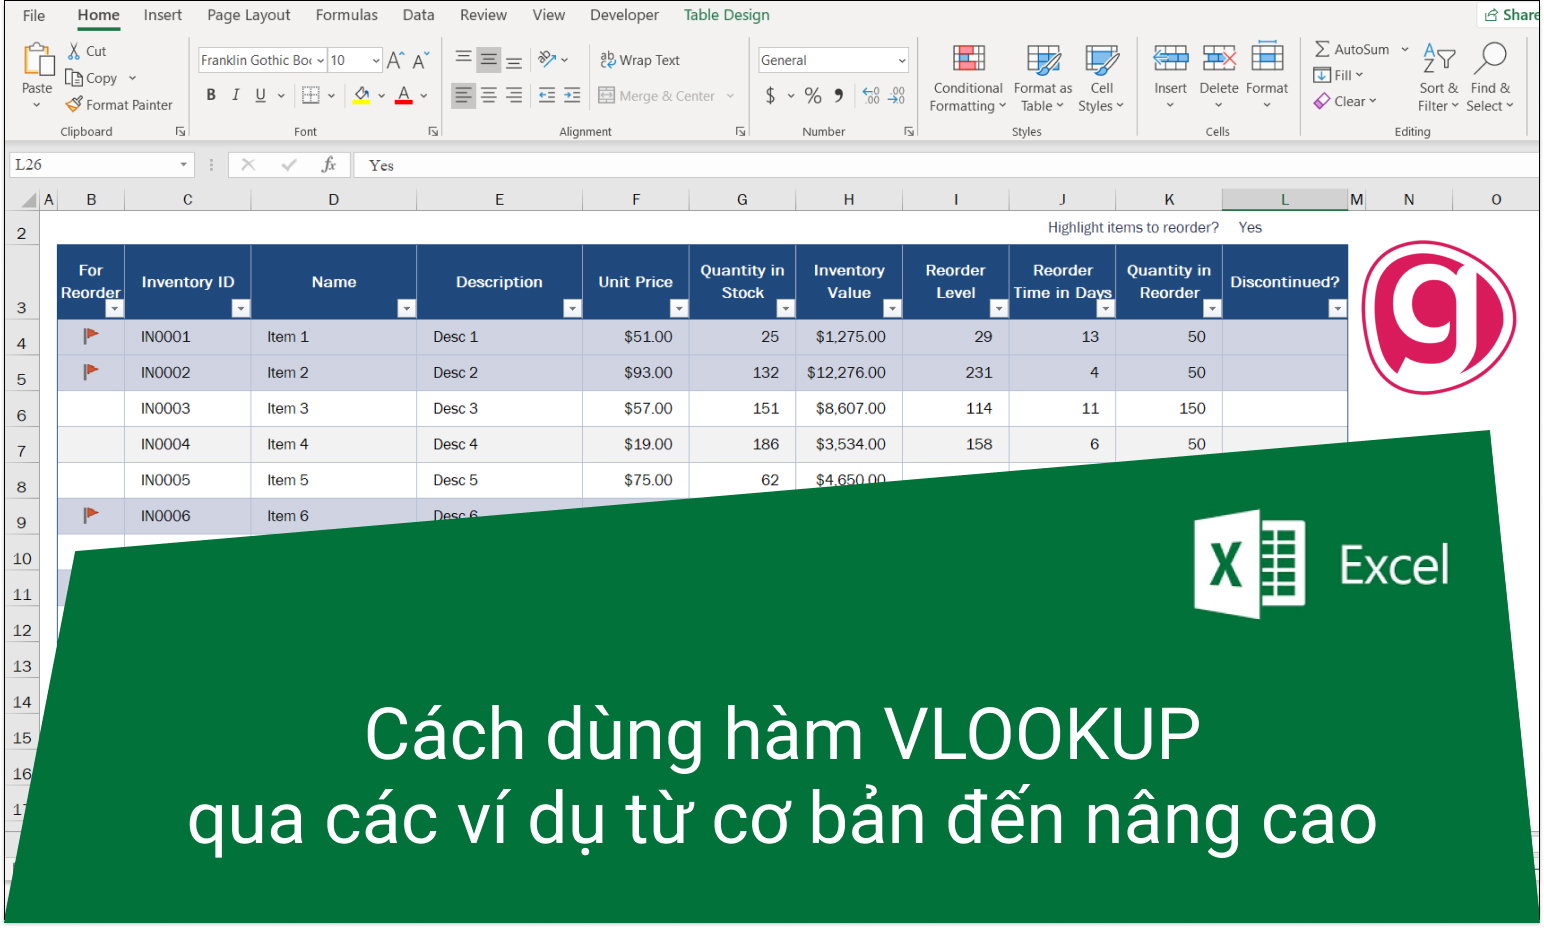 Cách tìm tên hàng dựa vào mã hàng trong Excel bằng hàm Vlookup